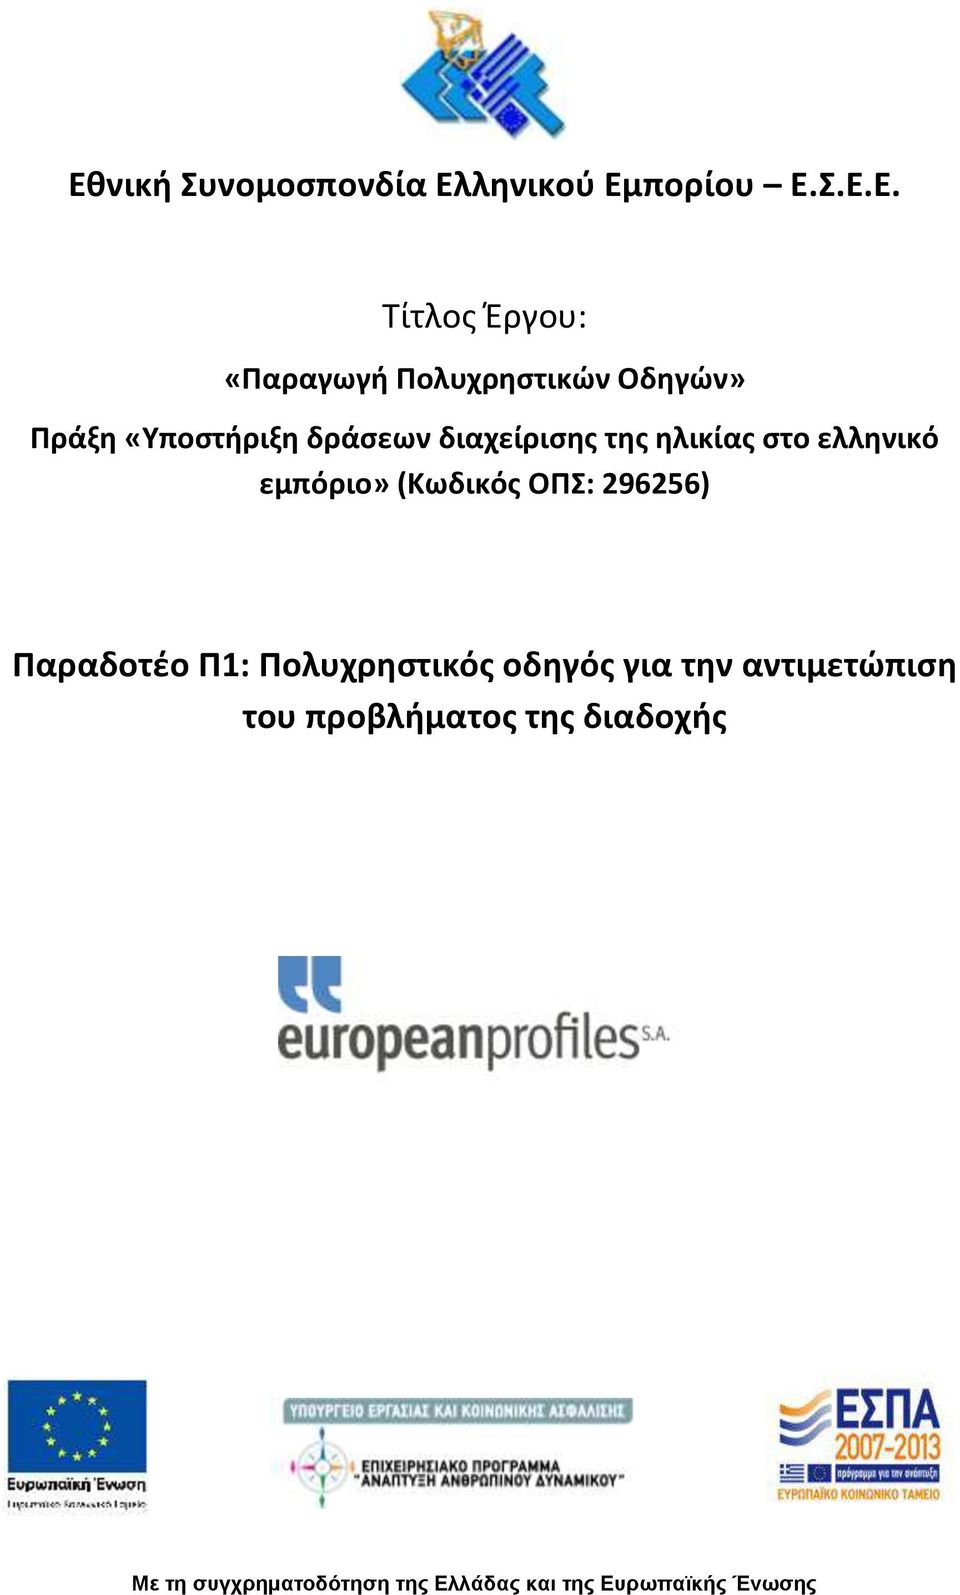 ελληνικό εμπόριο» (Κωδικός ΟΠΣ: 296256) Παραδοτέο Π1: Πολυχρηστικός οδηγός για την